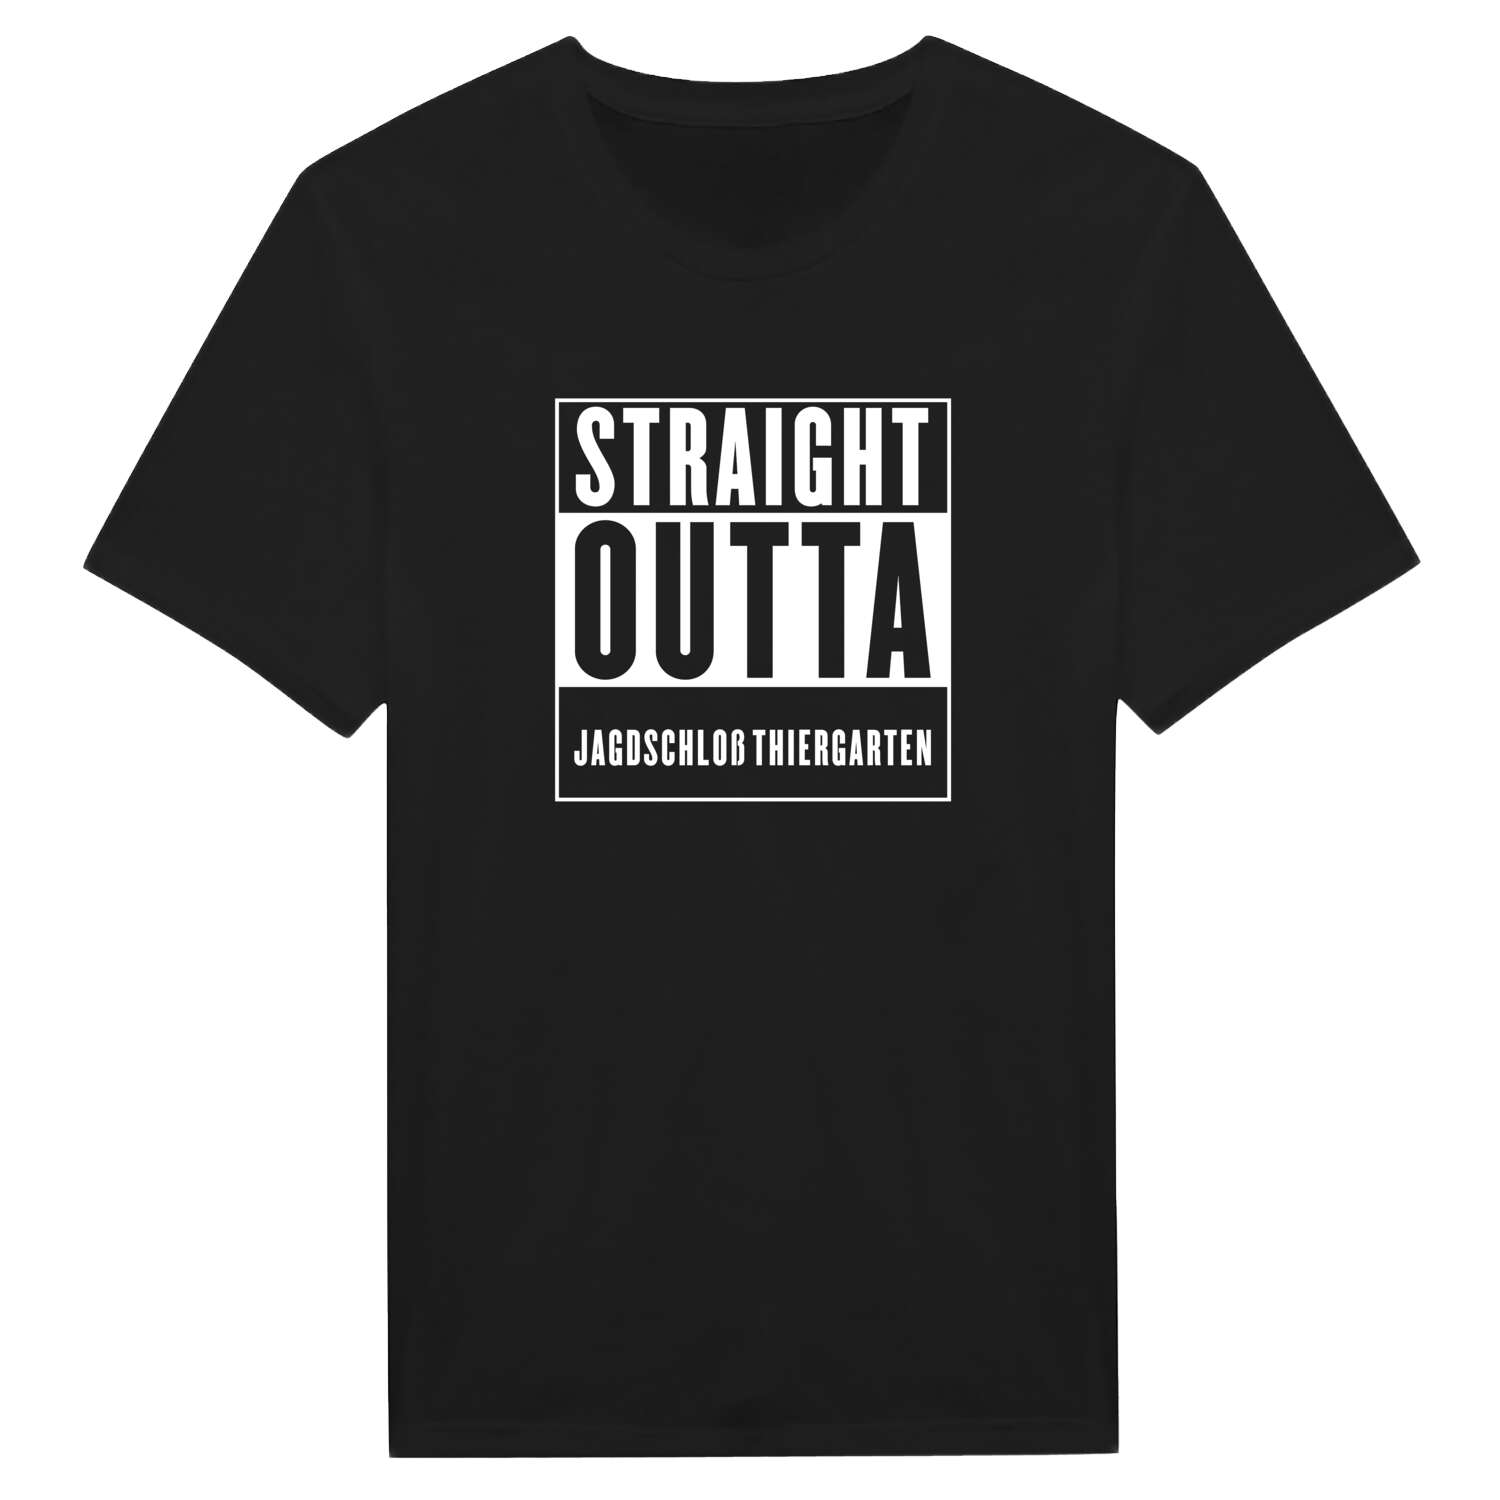 Jagdschloß Thiergarten T-Shirt »Straight Outta«